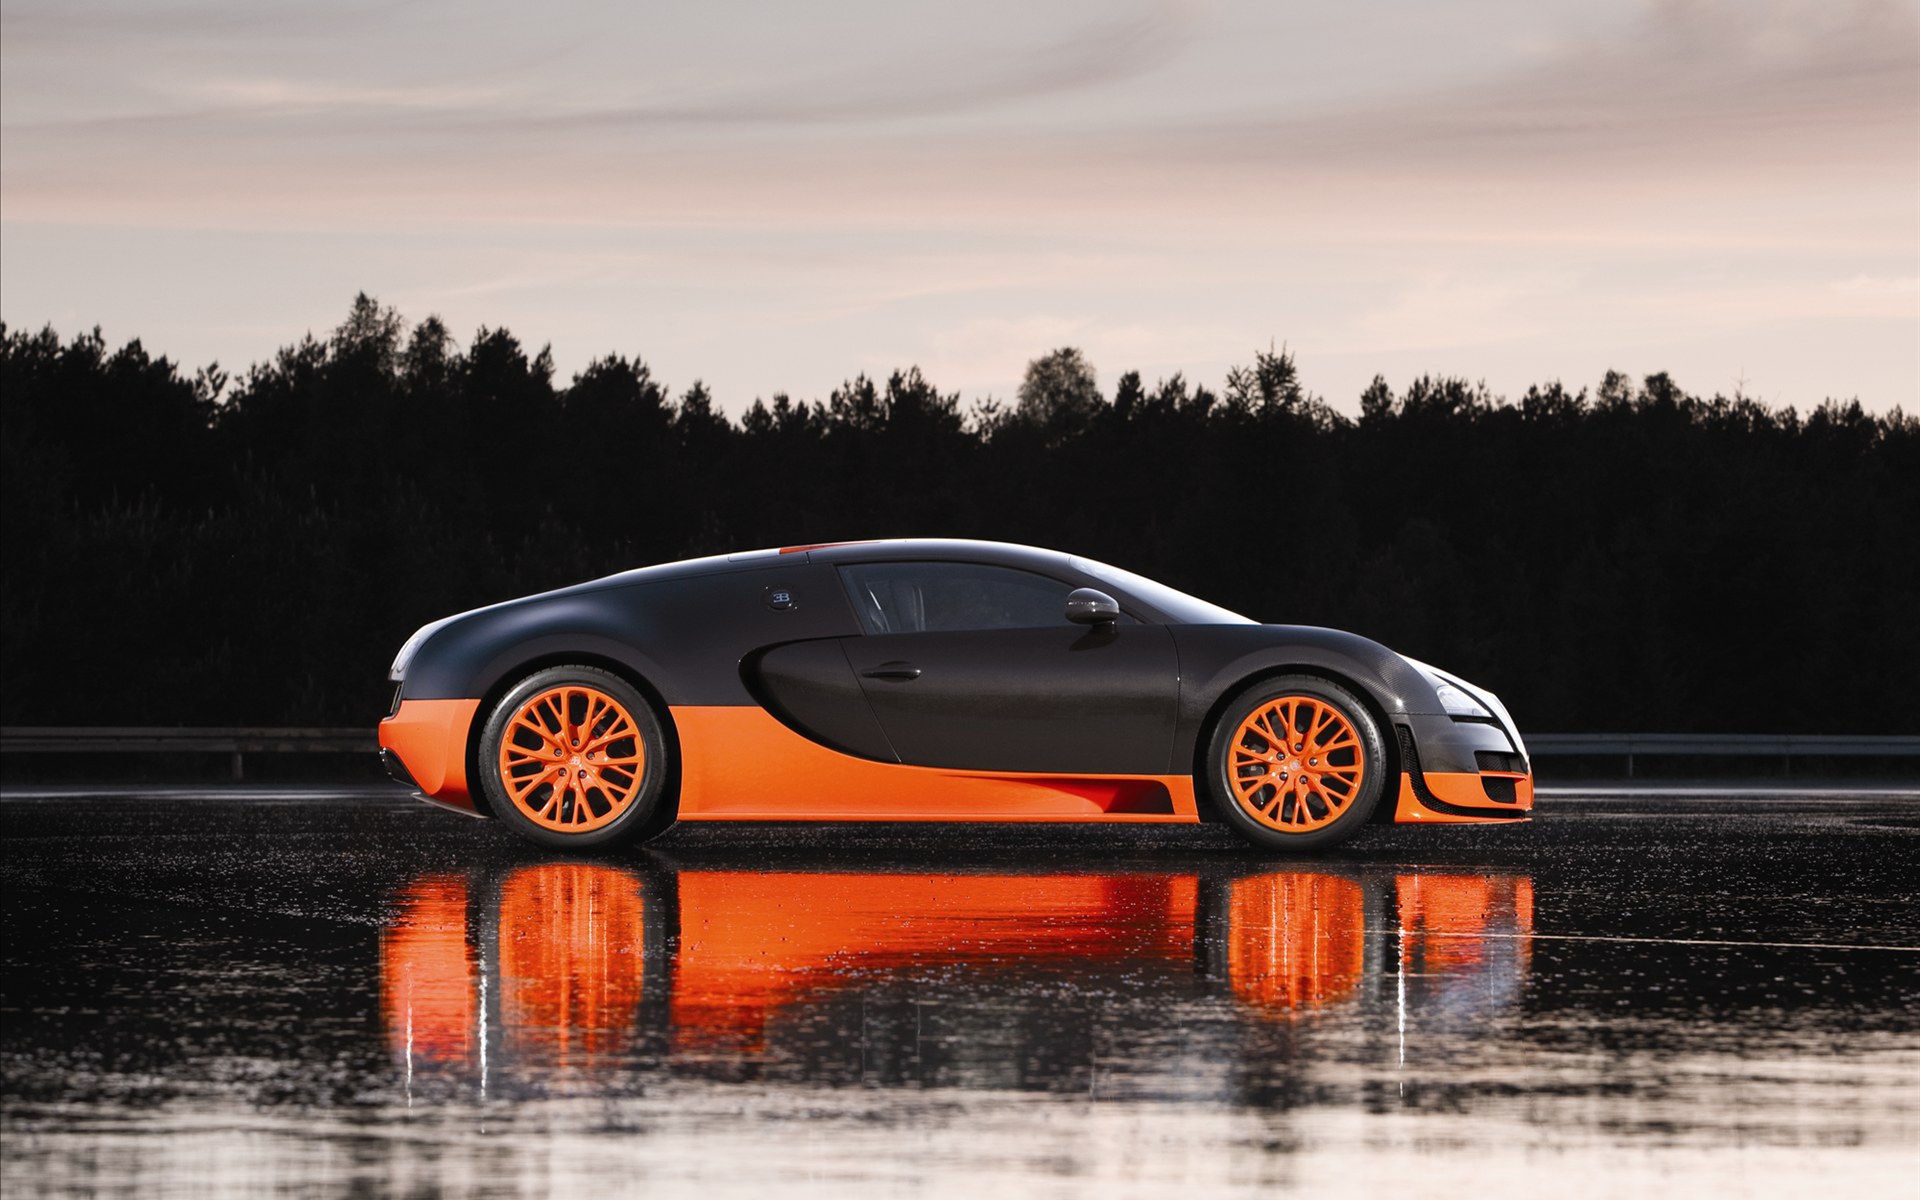 Bugatti Veyron(ӵ) 16.4 Super Sports Car 2011(ֽ13)